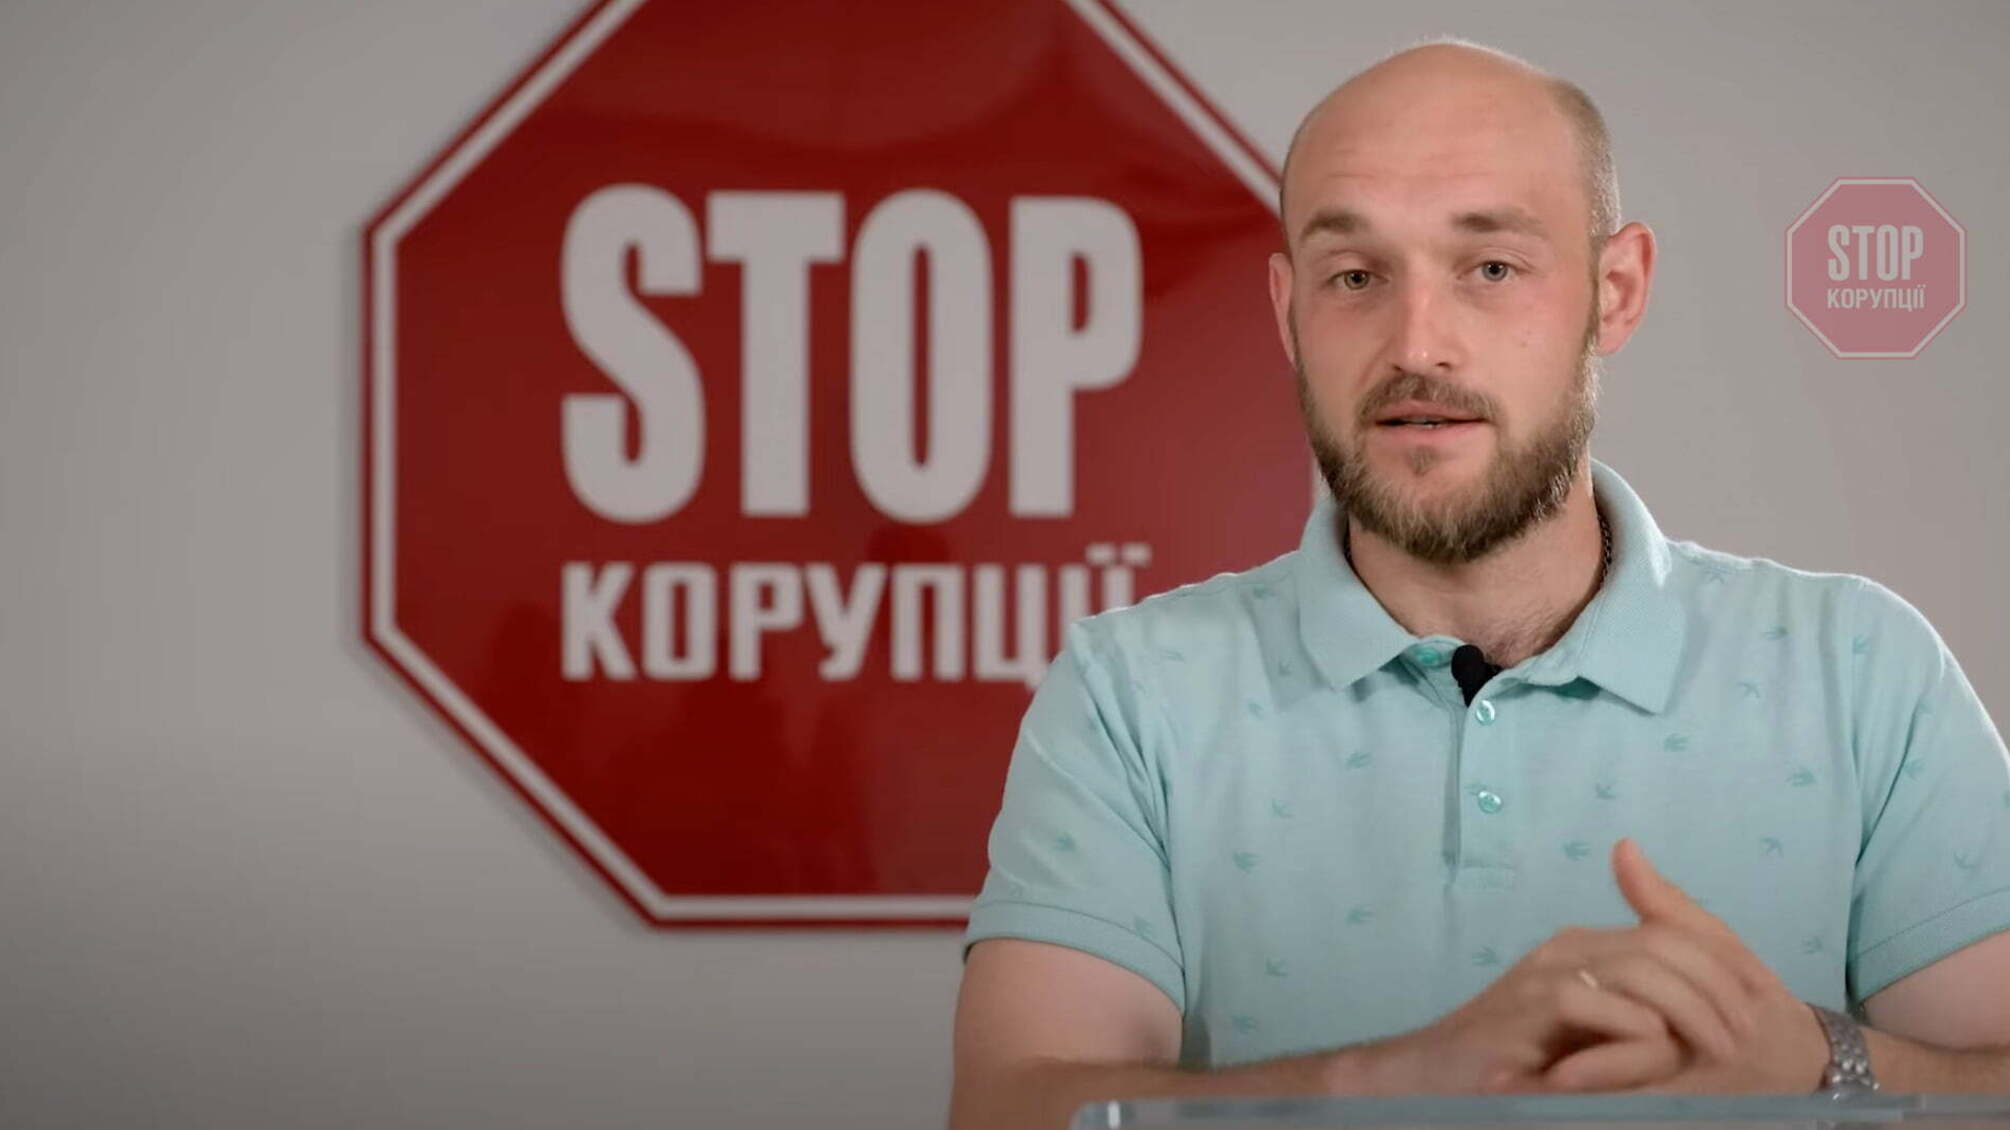 Бондарчук: як вступити до лав ВГО 'Стоп корупції'